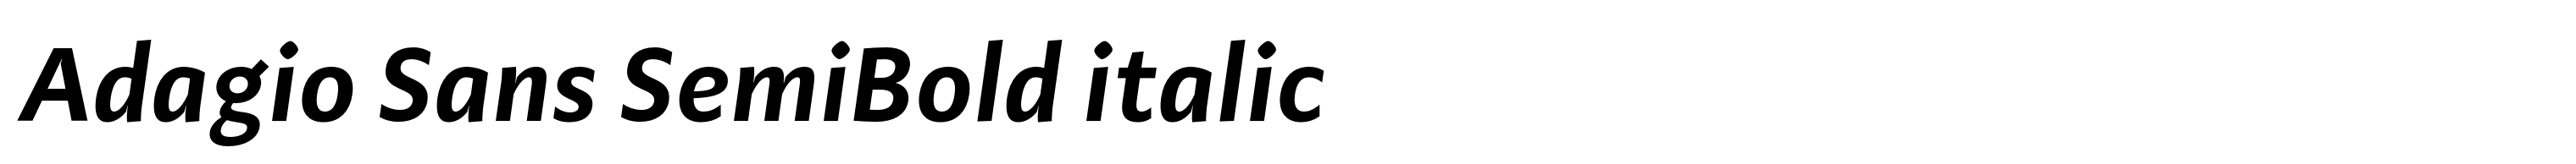 Adagio Sans SemiBold italic